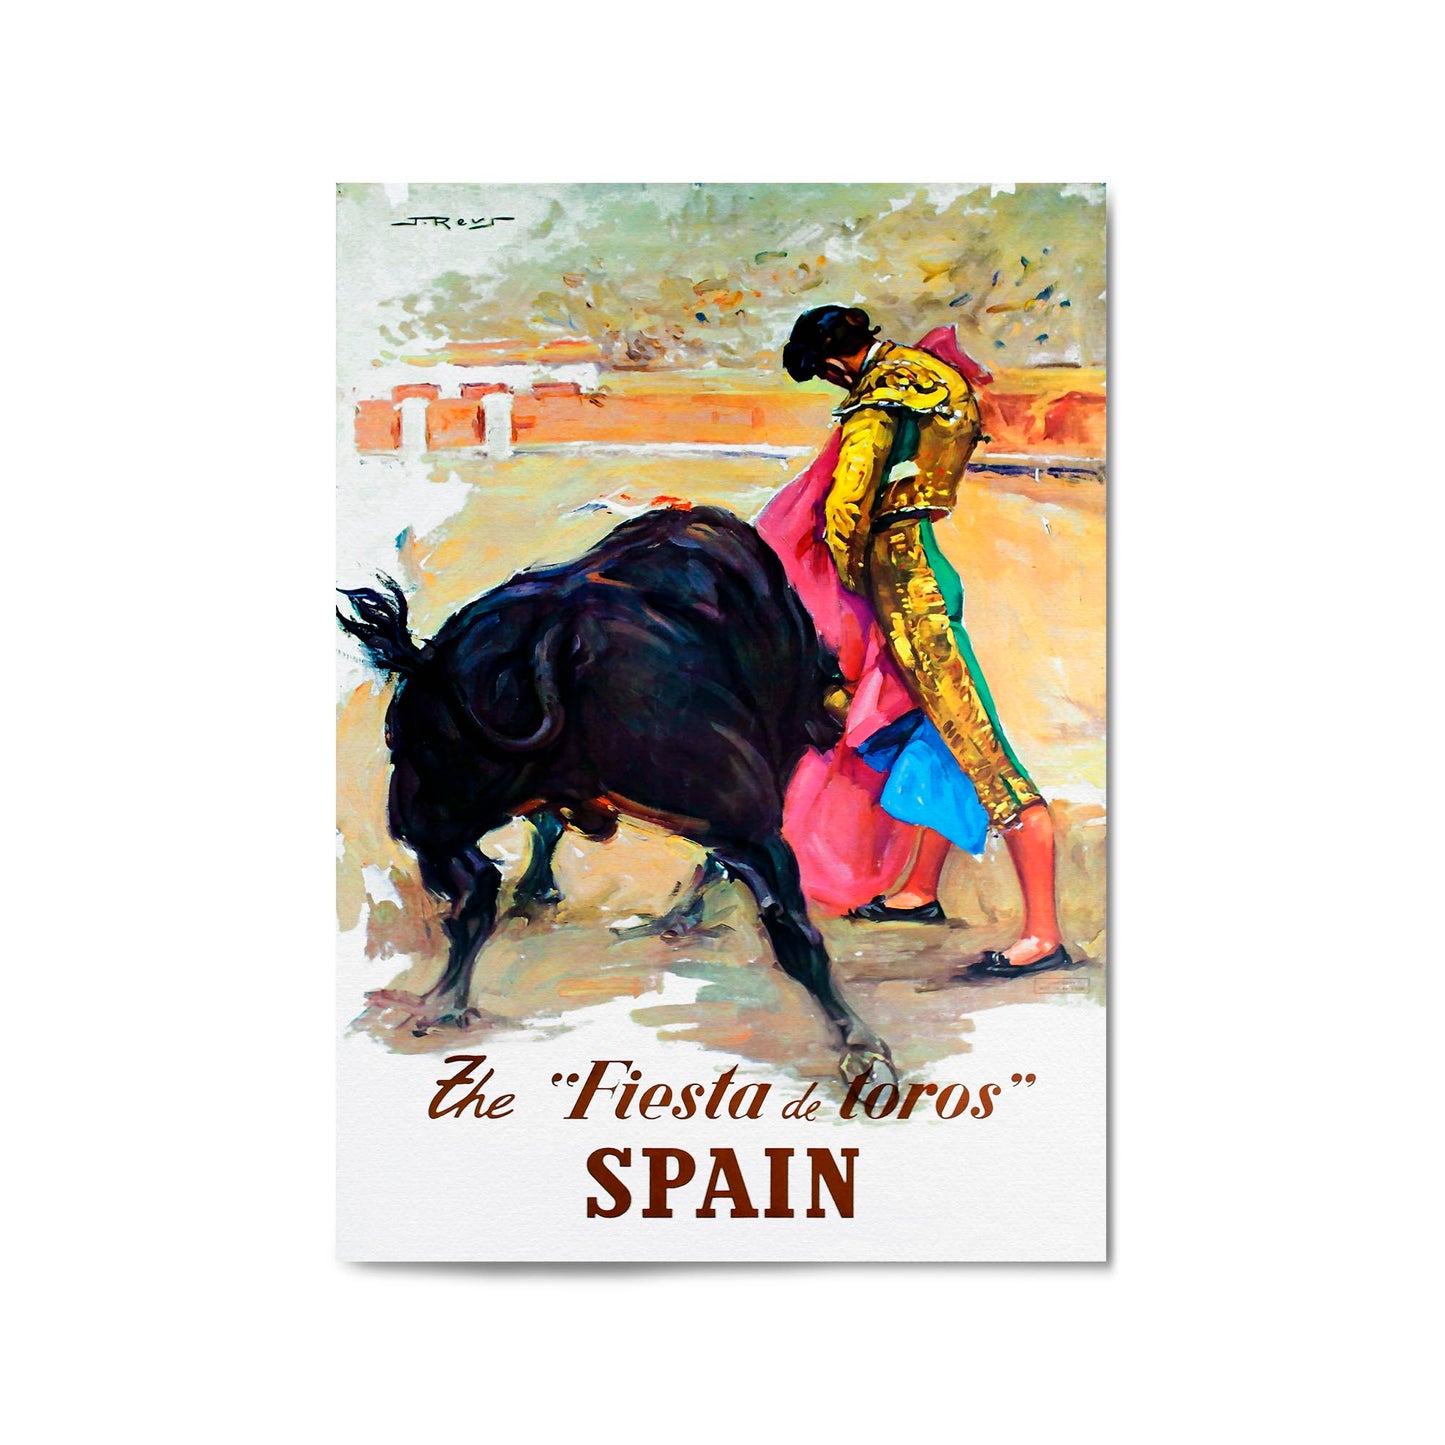 Spain by J. Reus | Framed Vintage Travel Poster